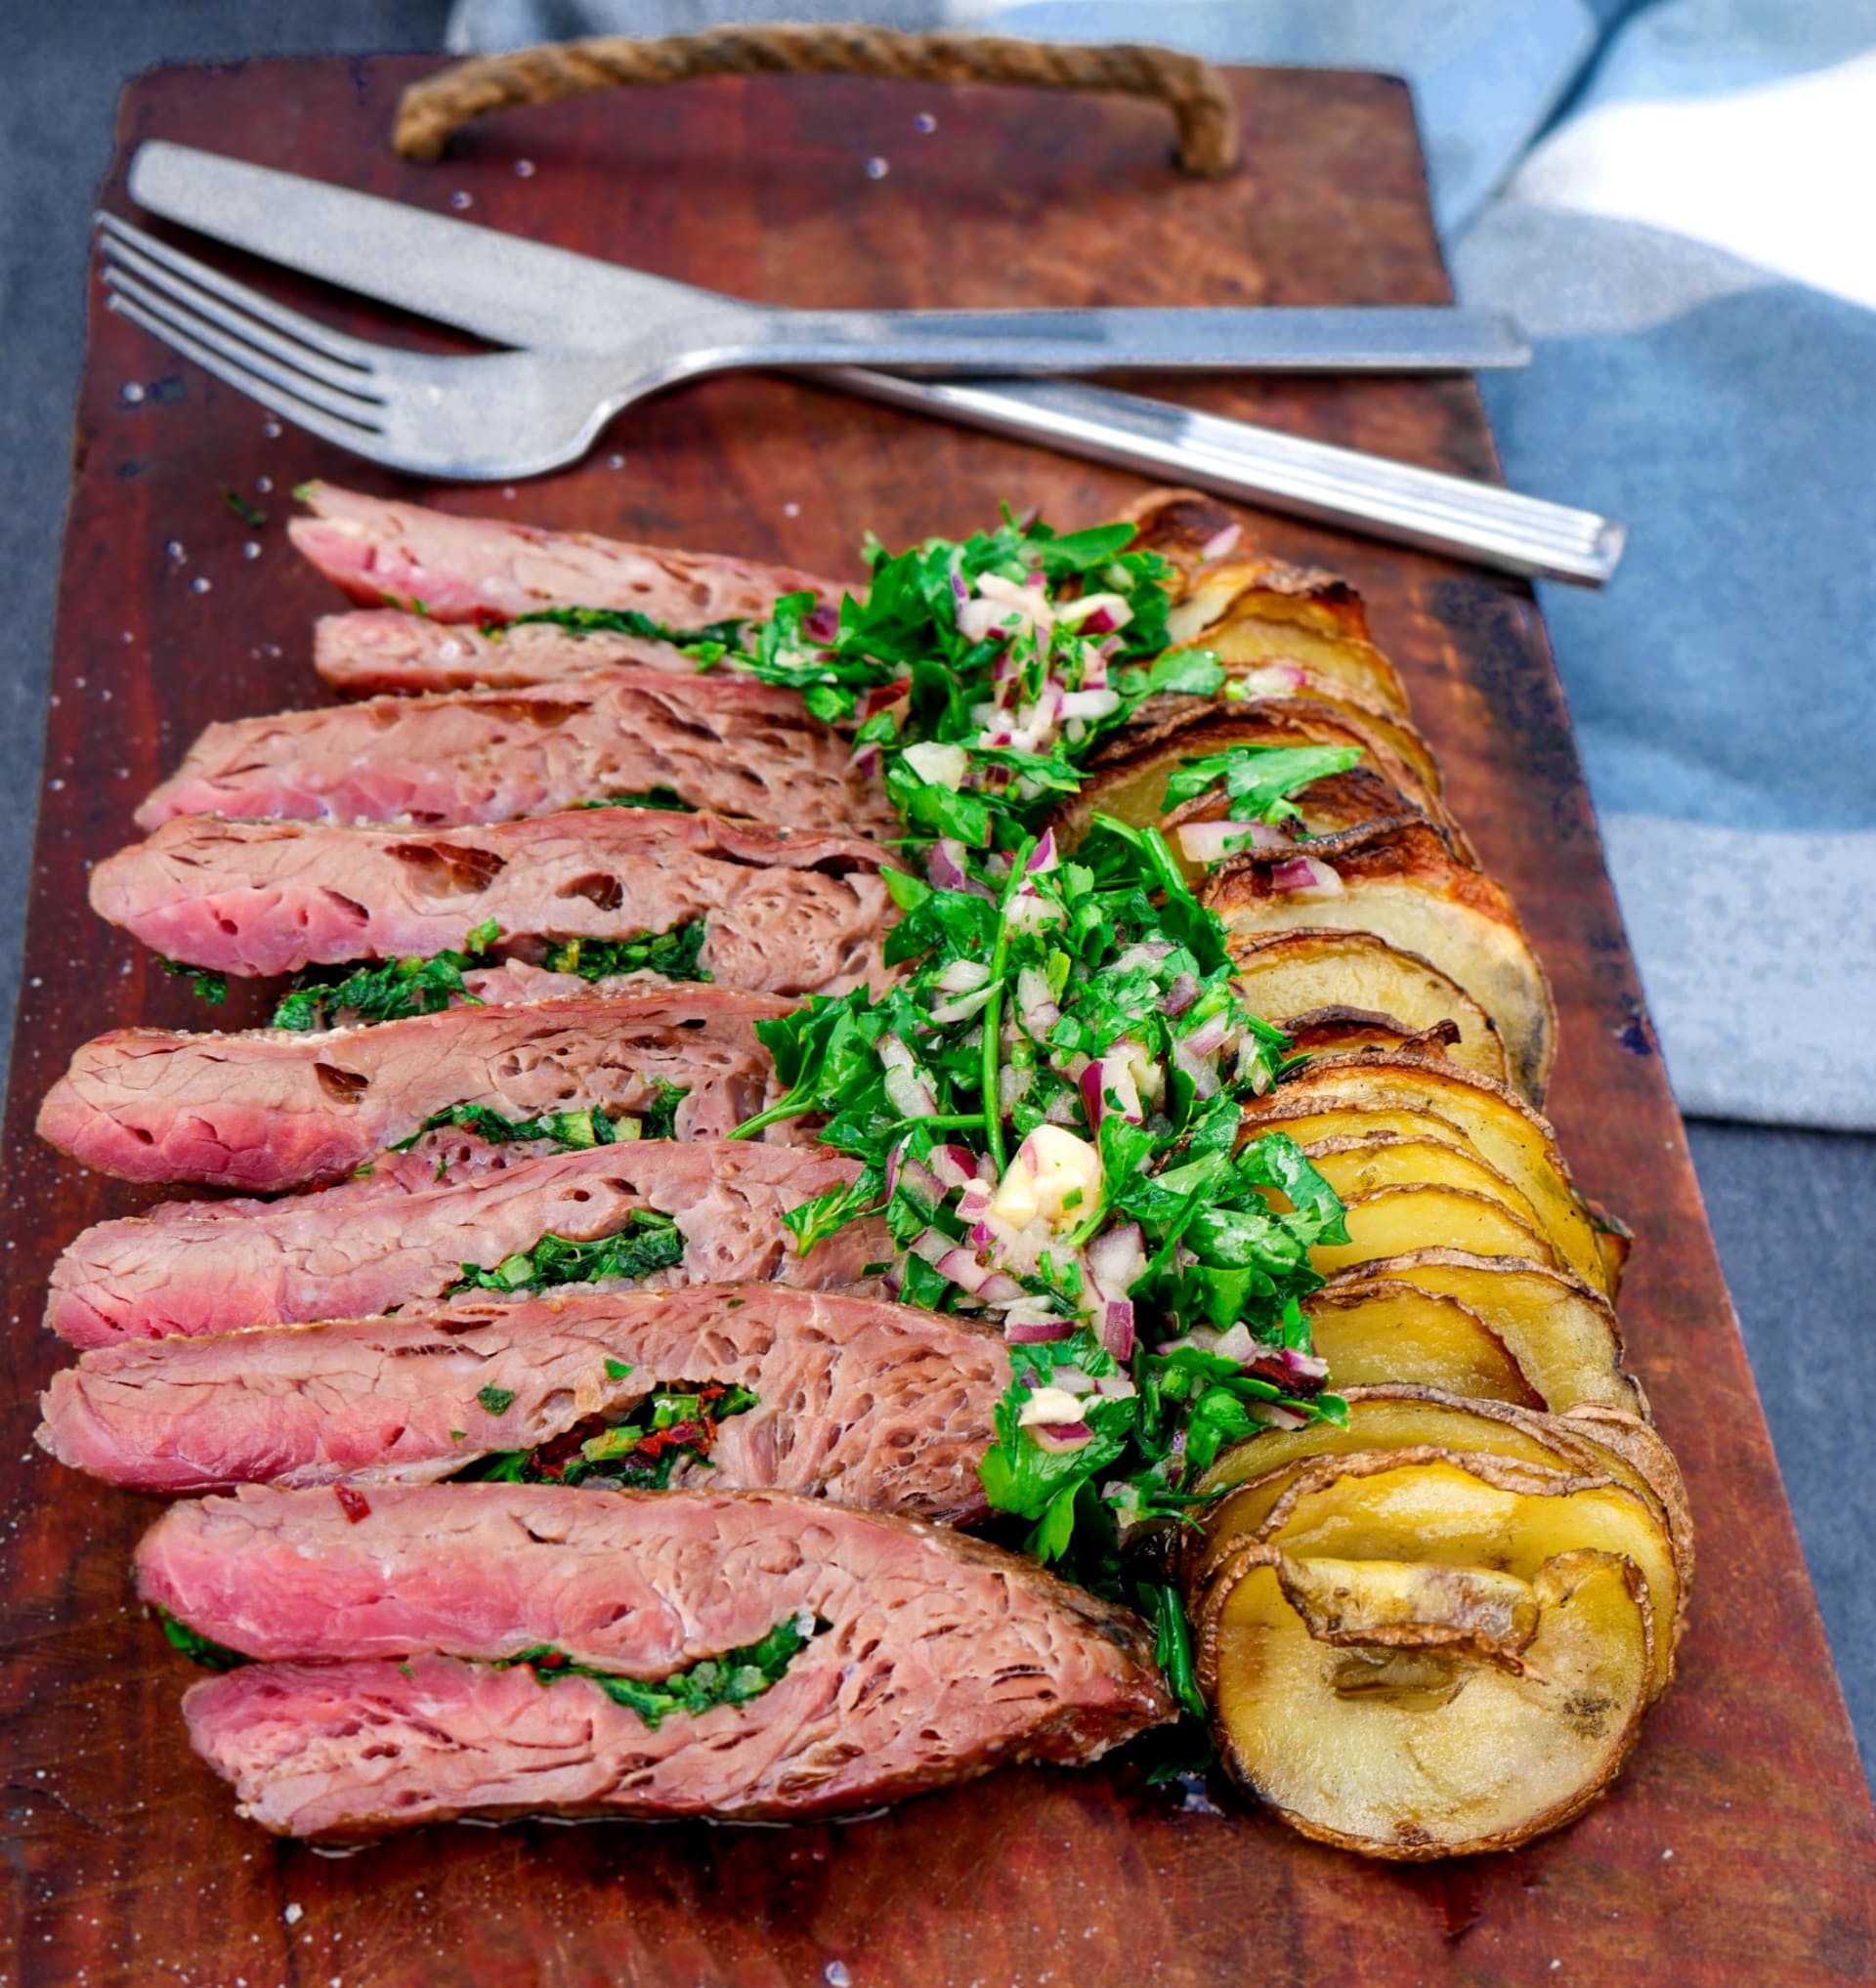 Plněný flank steak s chimichurri a bramborovým špízem podle Huga Hromase 2